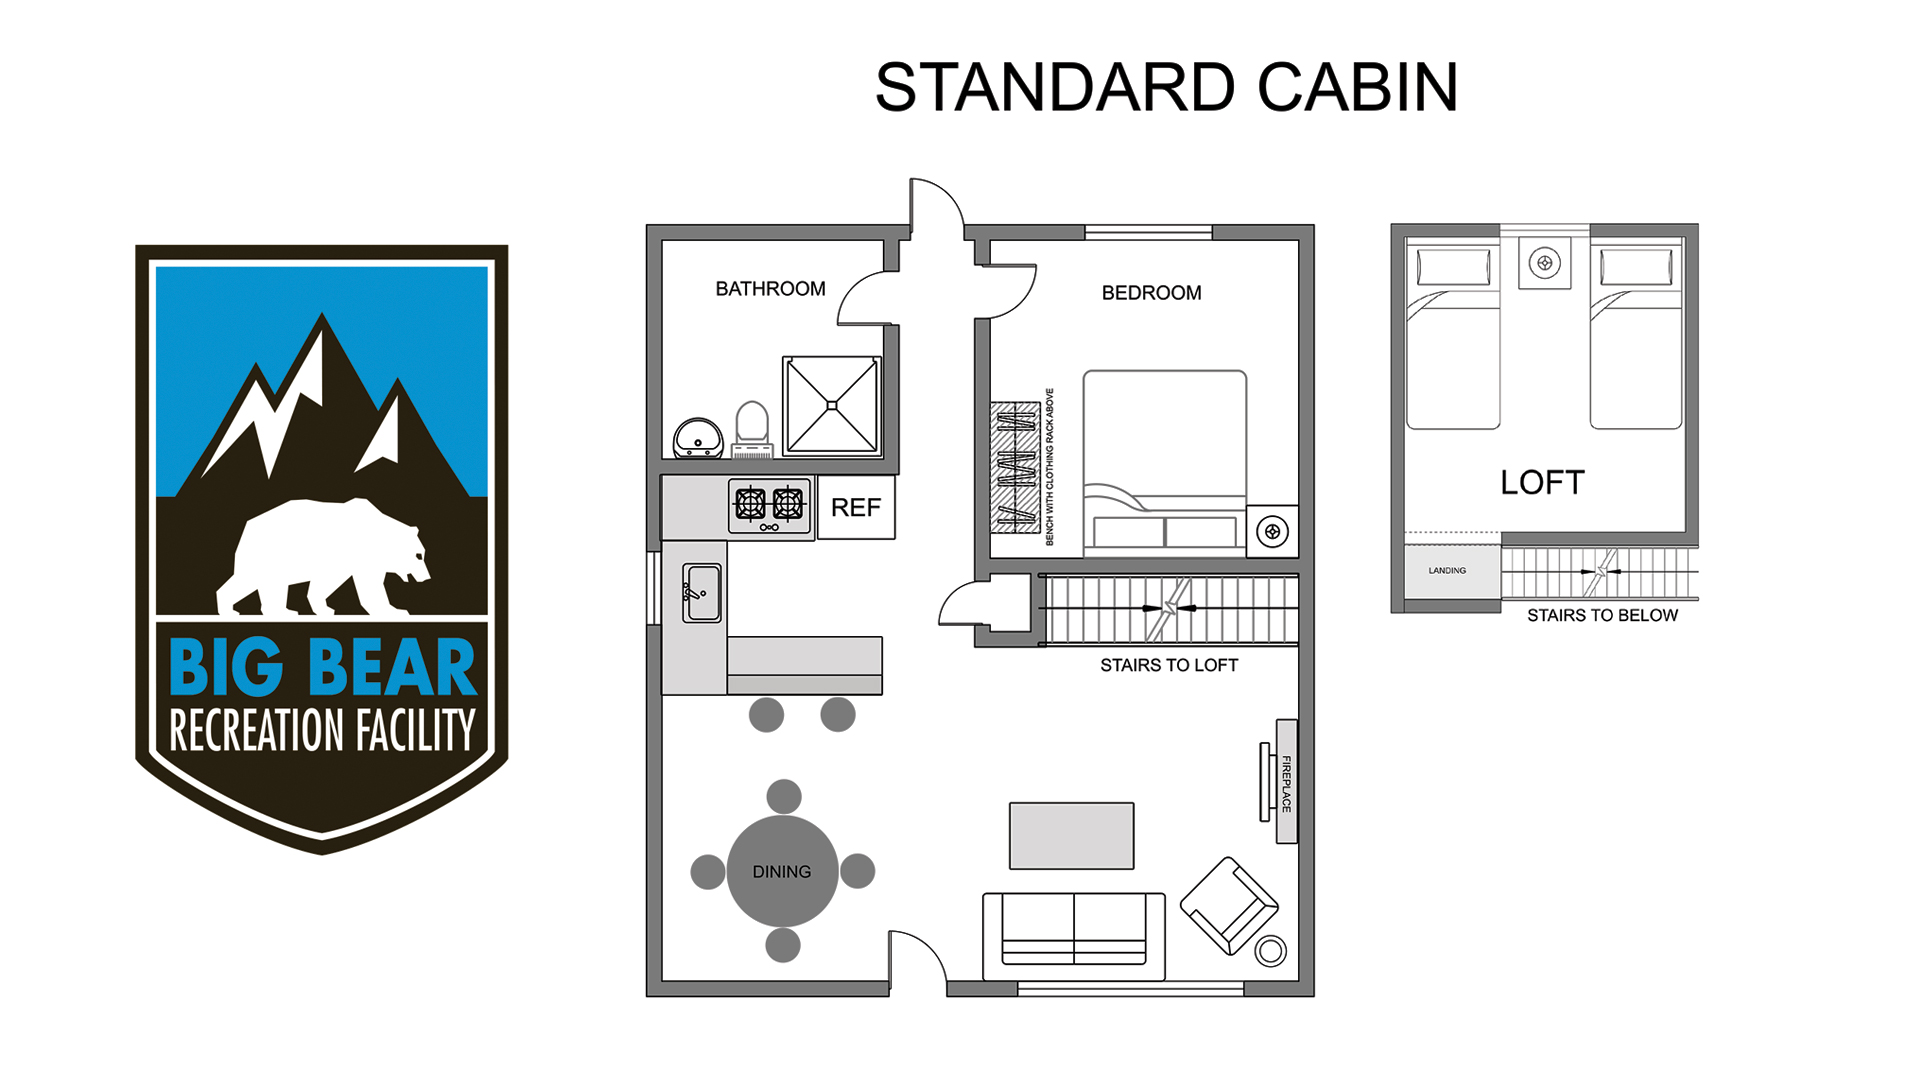 Standard Cabin floor plan